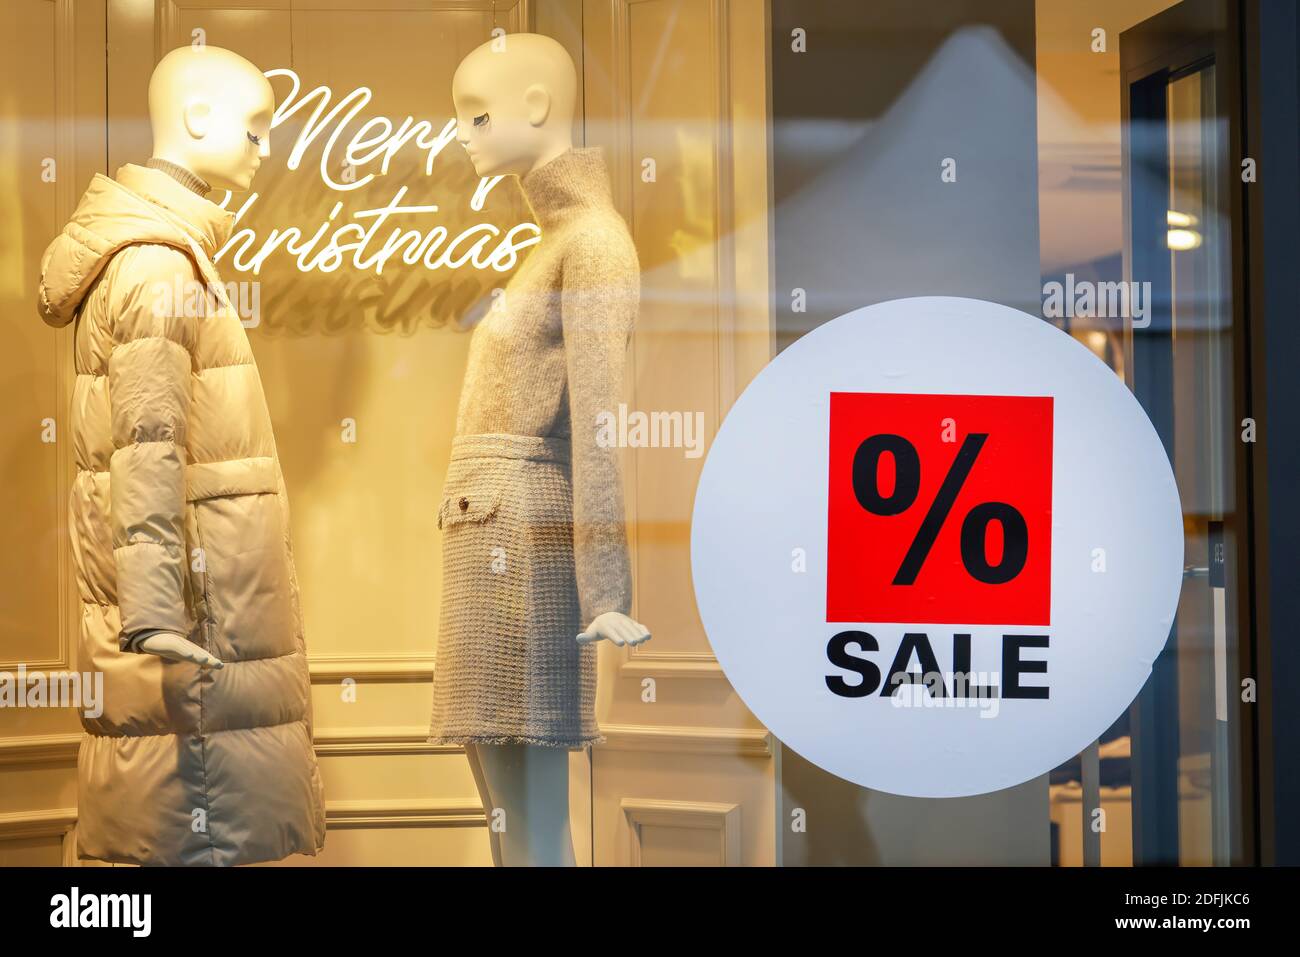 Essen, Ruhrgebiet, Nordrhein-Westfalen, Deutschland - Schaufenster eines Modehauses zur Weihnachtszeit mit Sonderangeboten. Stockfoto